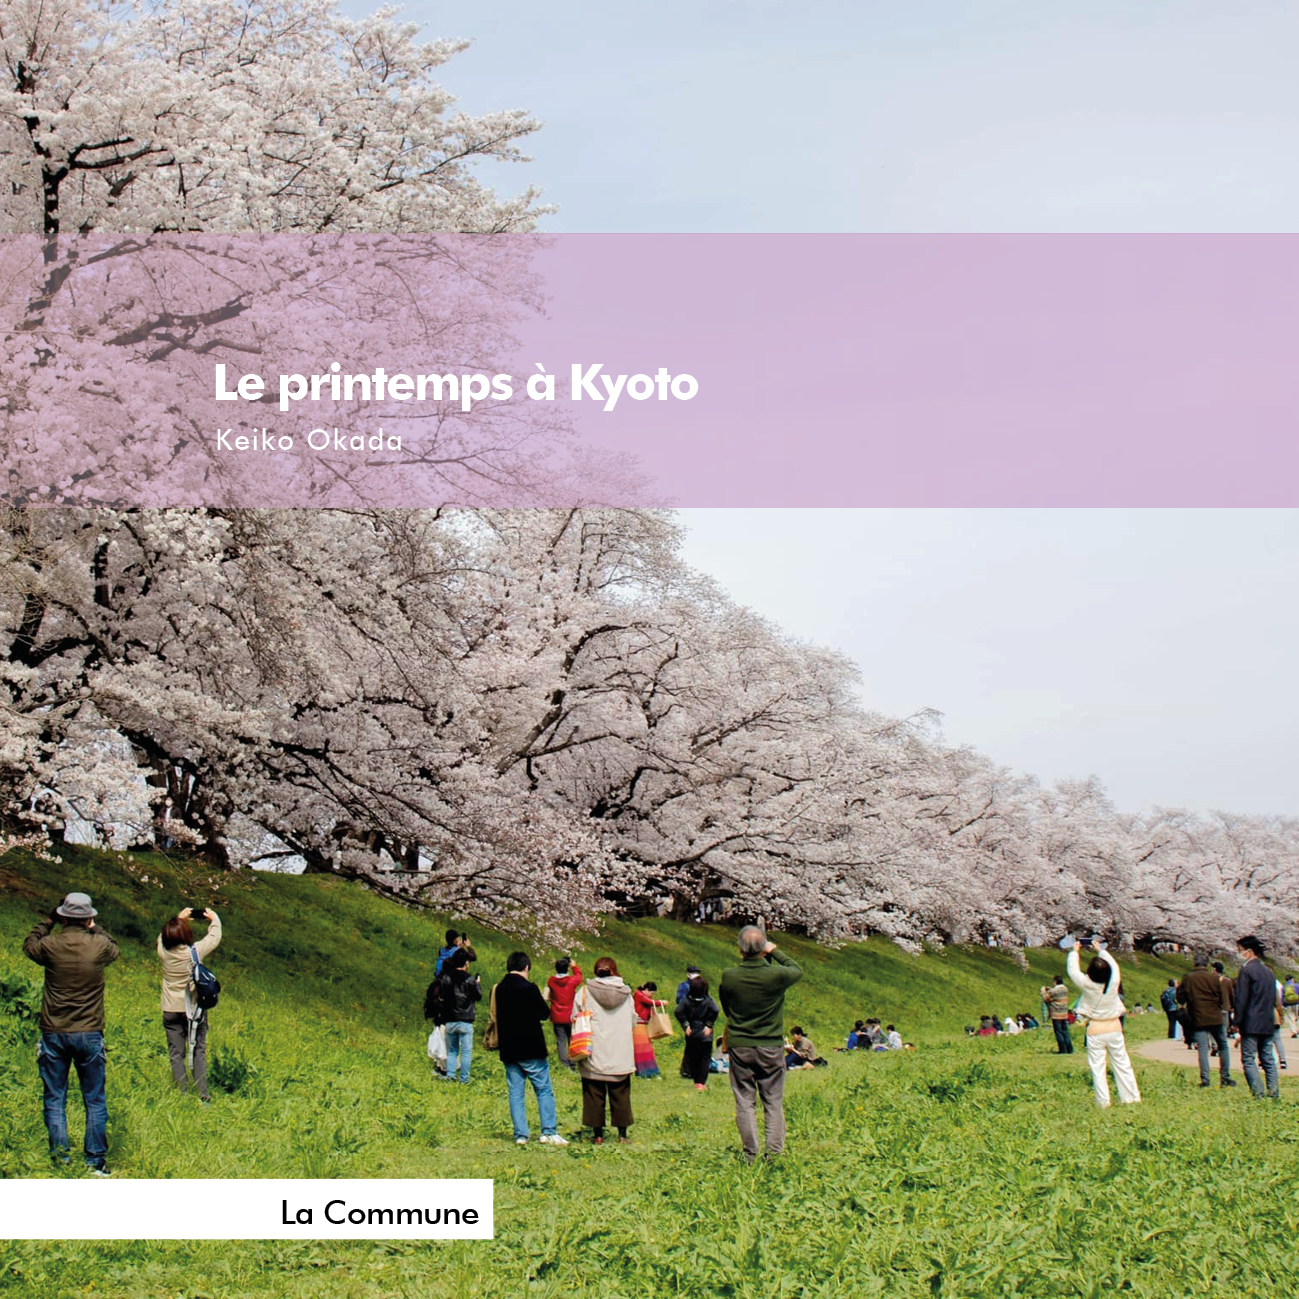 Parution : Le printemps à Kyoto. Un livre de Keiko Okada.